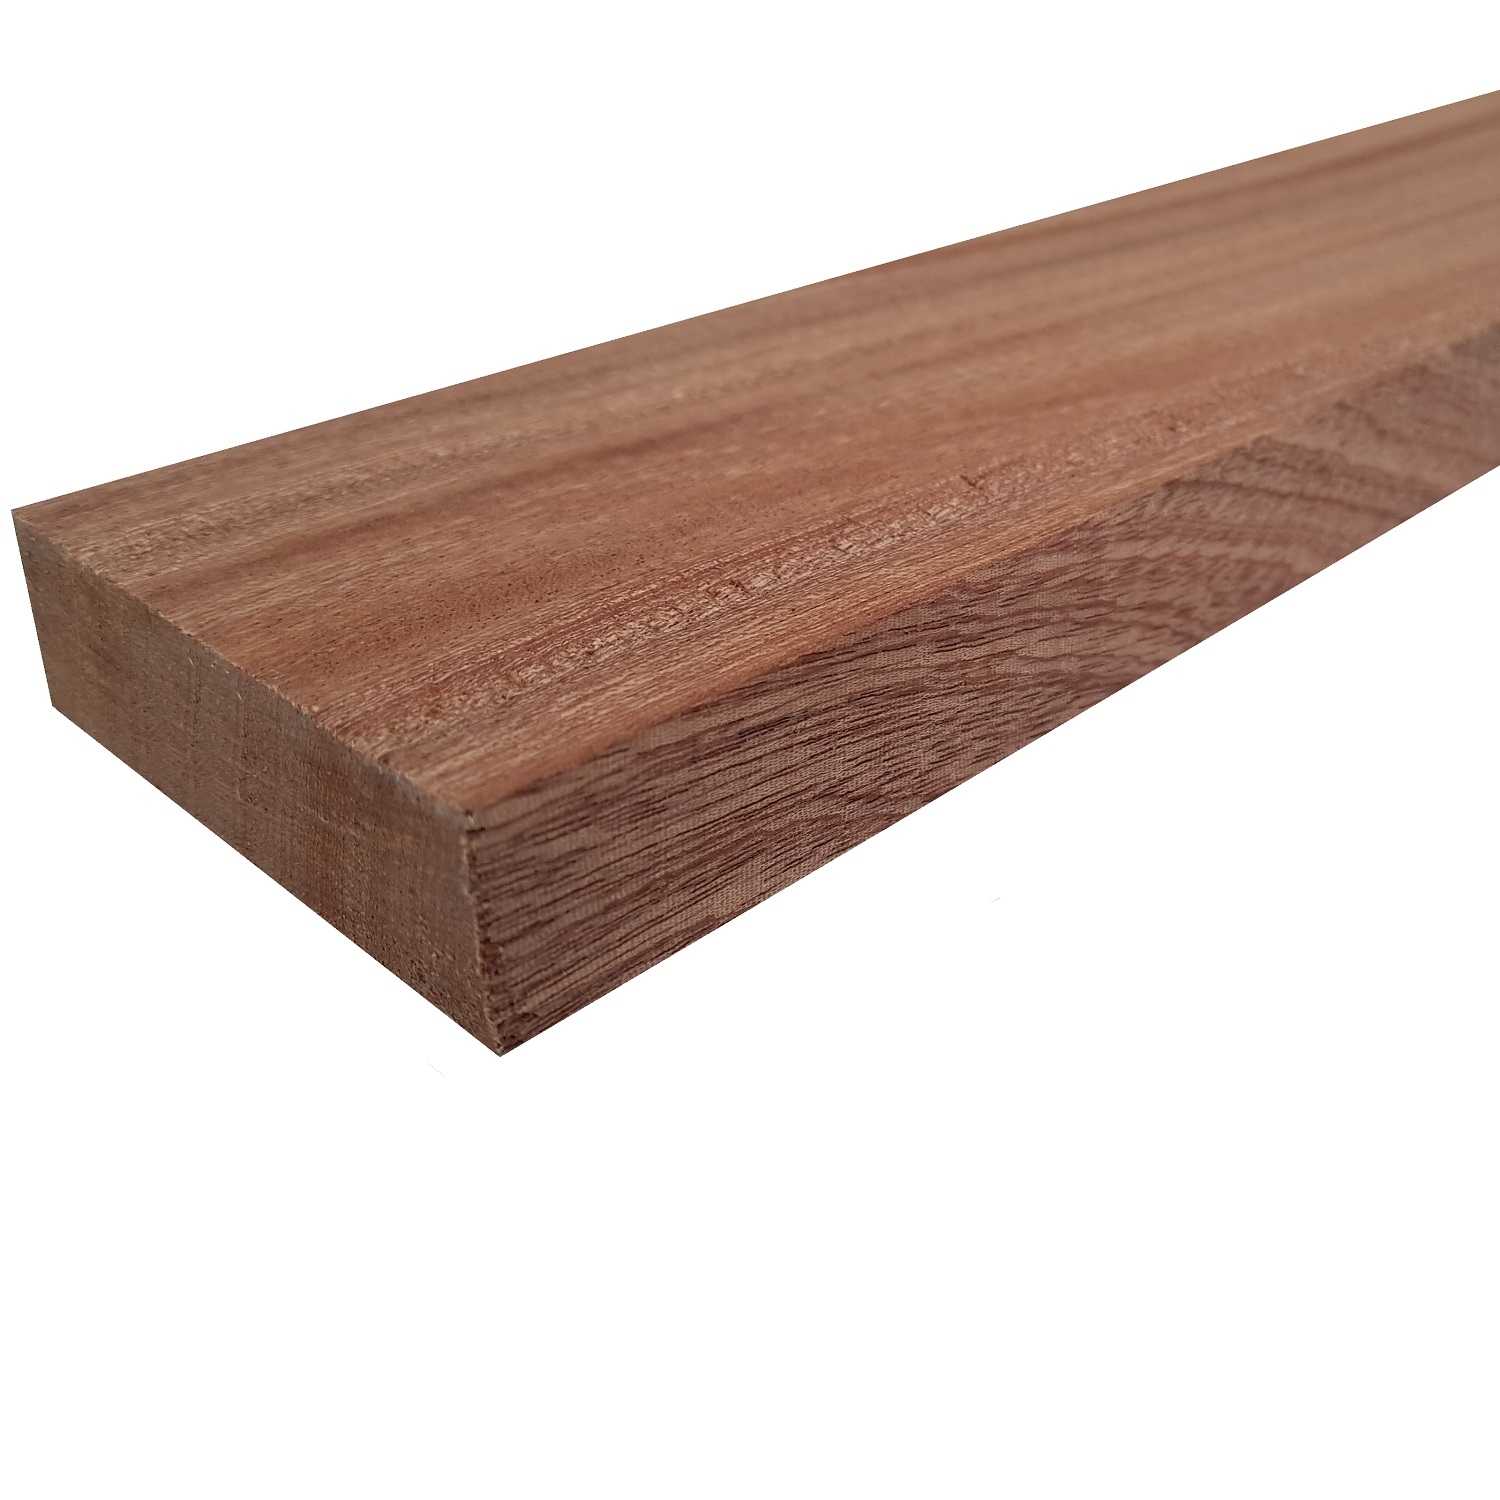 Tavola legno di Mogano Refilato Piallato mm 21 x 140 x 1250 Sipo